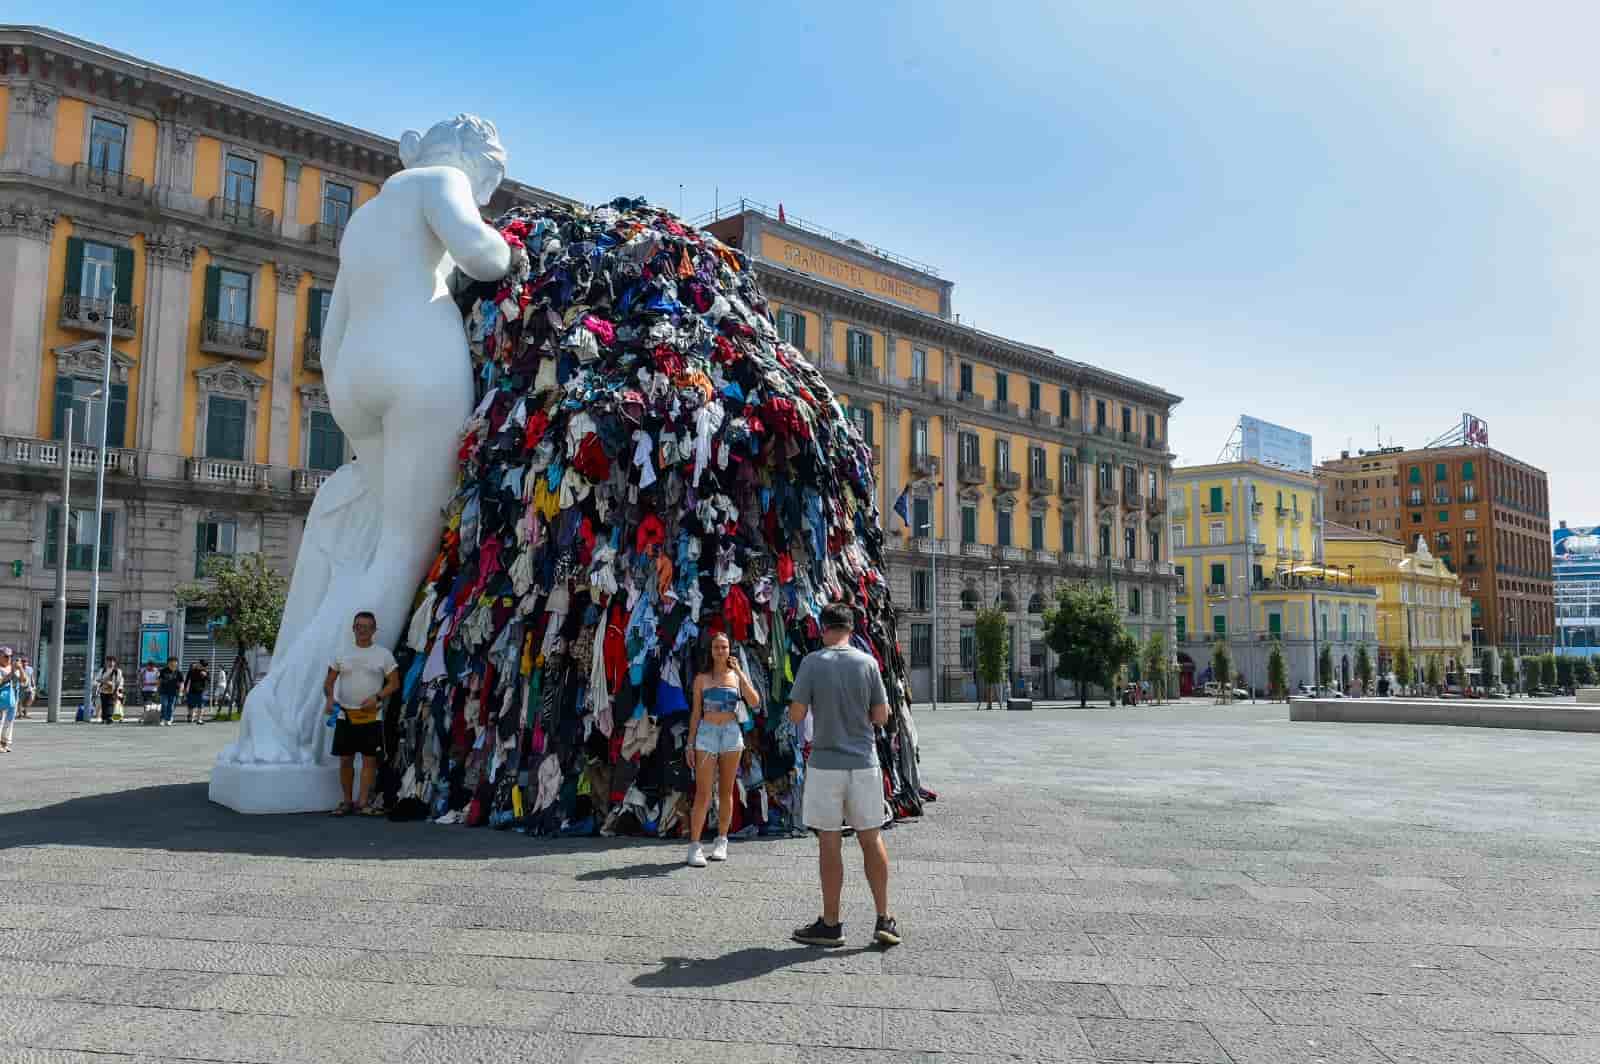 La Venere degli Stracci di Pistoletto, il significato dell'opera incendiata a Napoli e la reazione dell'artista: “Pronto a rigenerare”